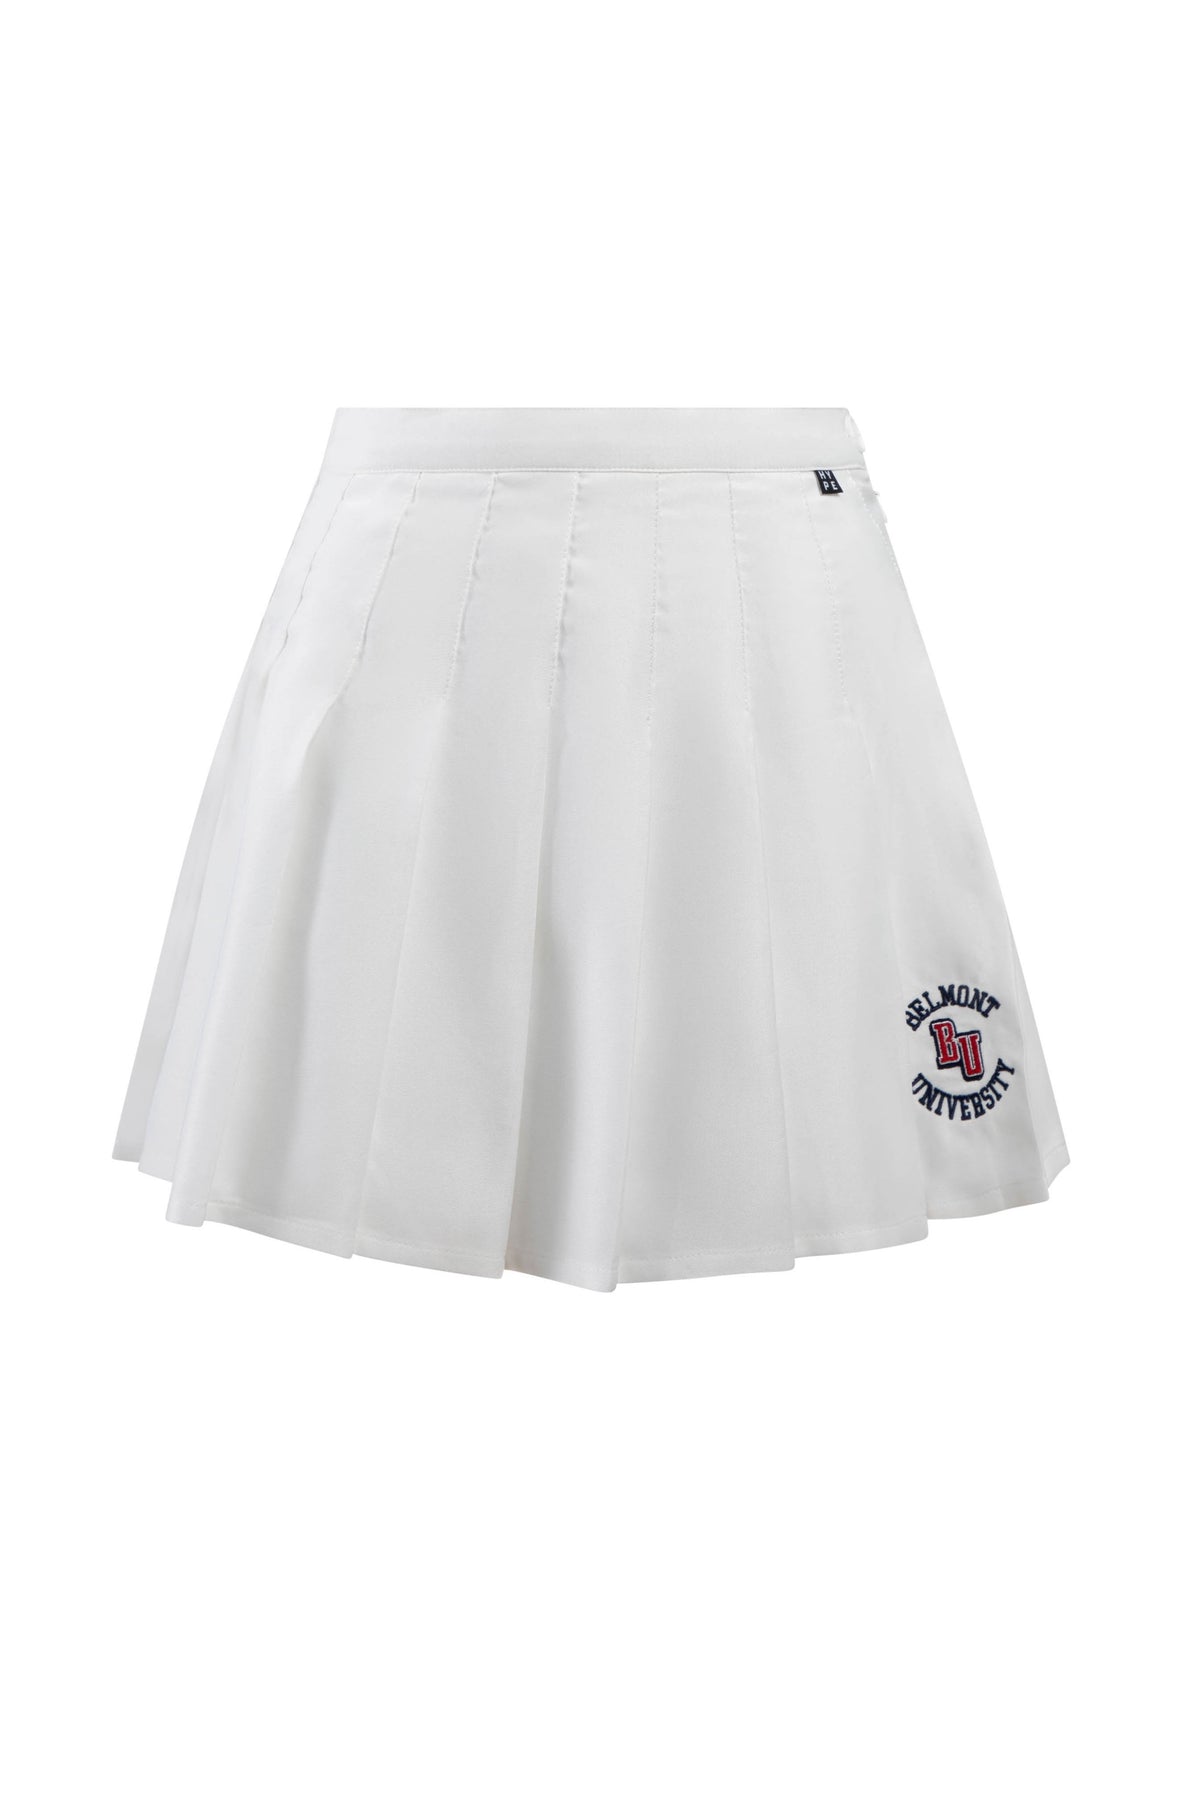 Belmont University Tennis Skirt